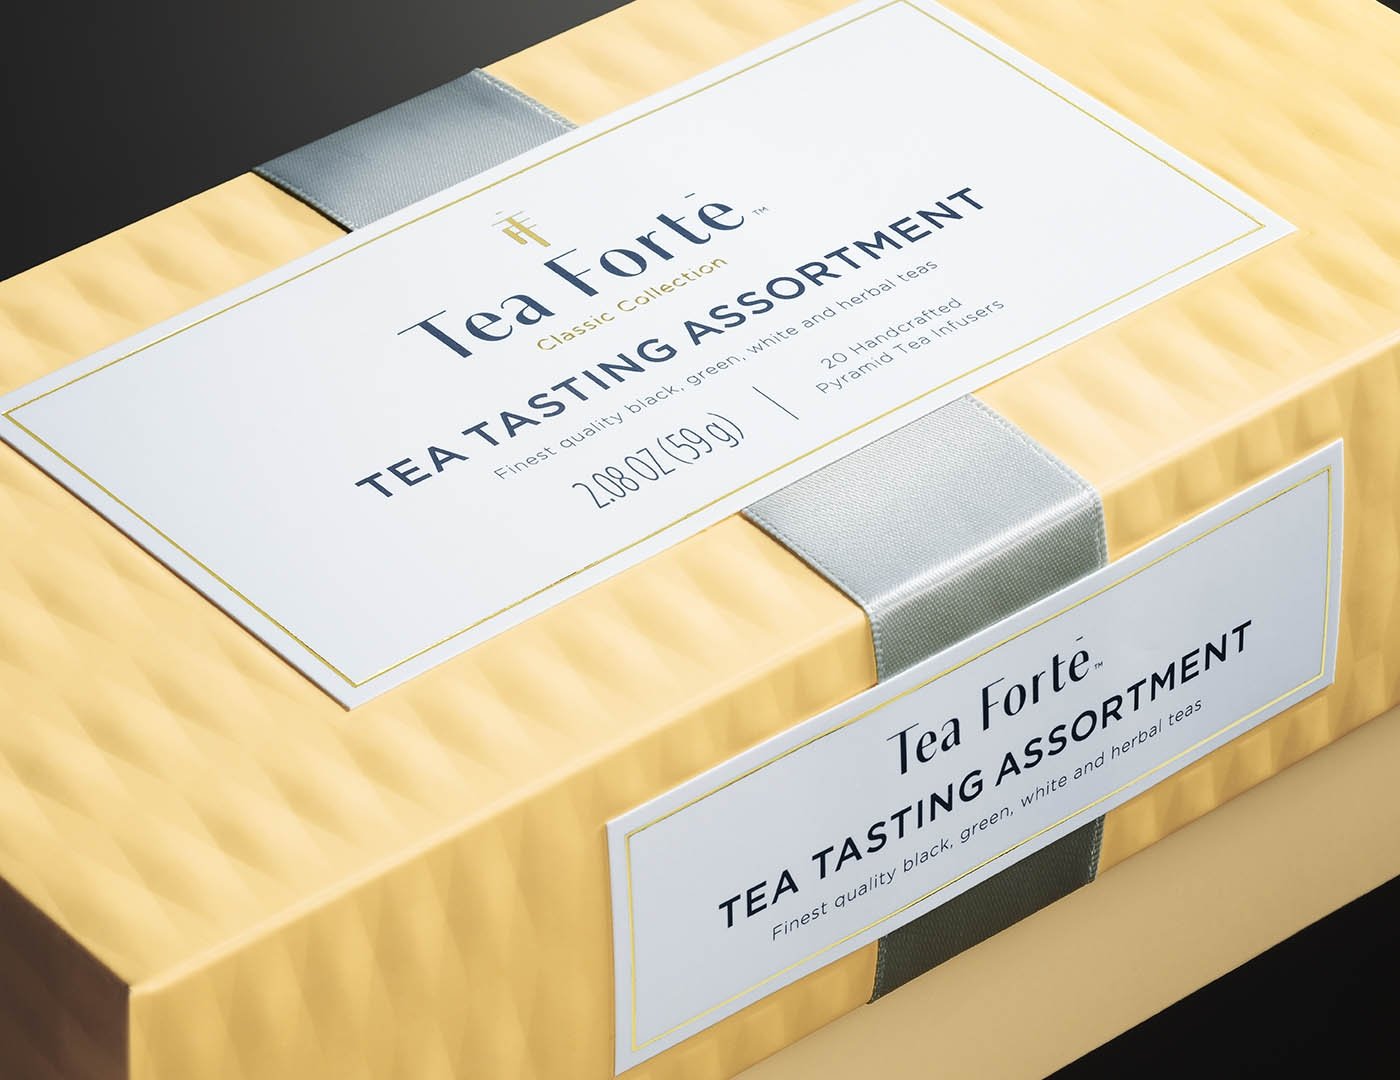 Tea Tasting tea assortment in a 20 count presentation box - closeup of lid